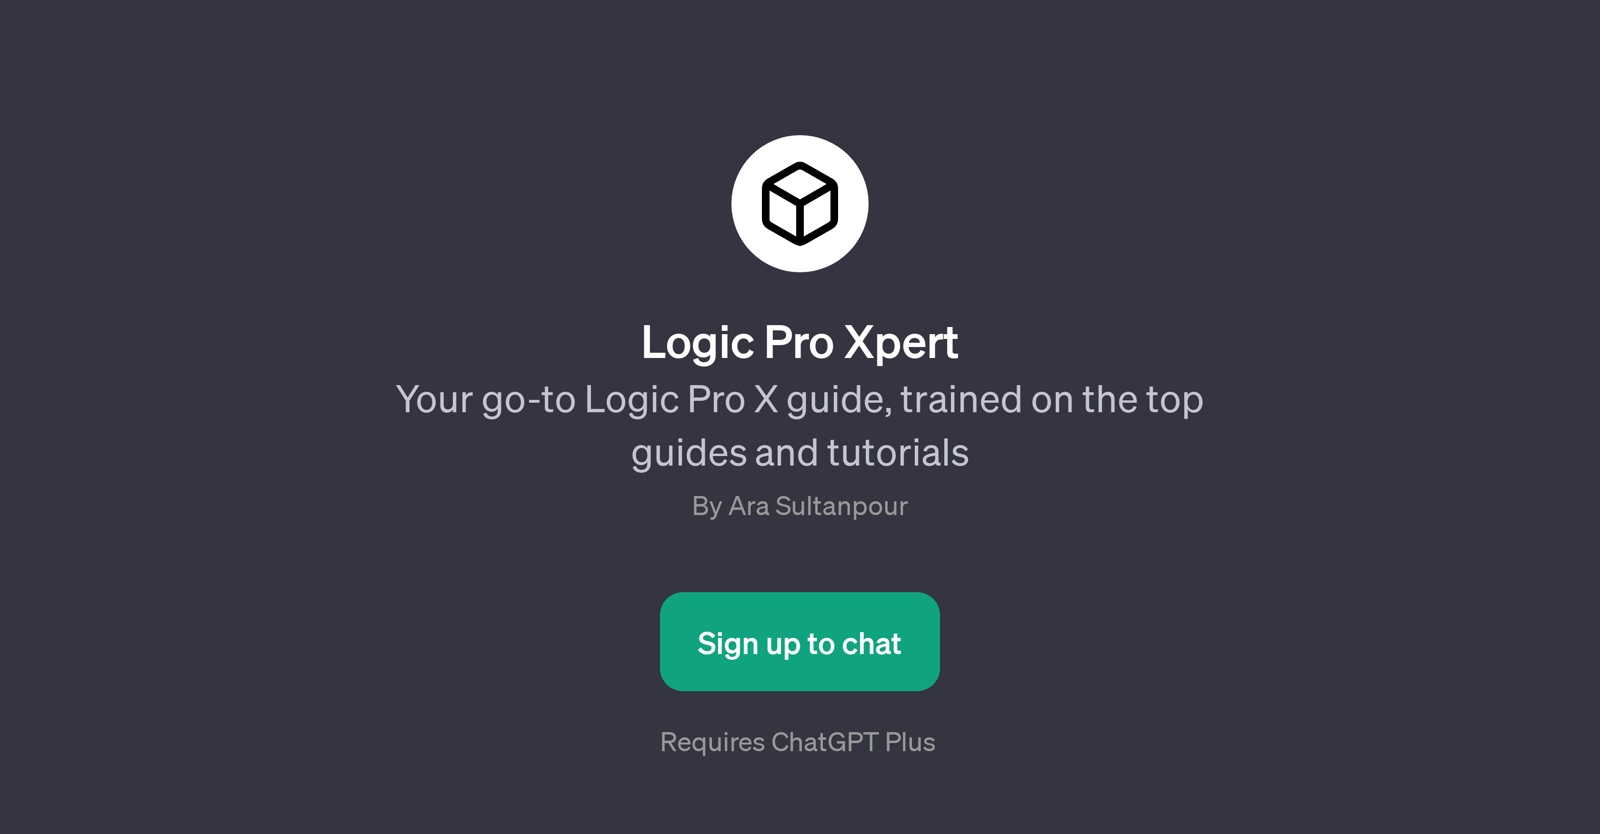 Logic Pro Xpert website